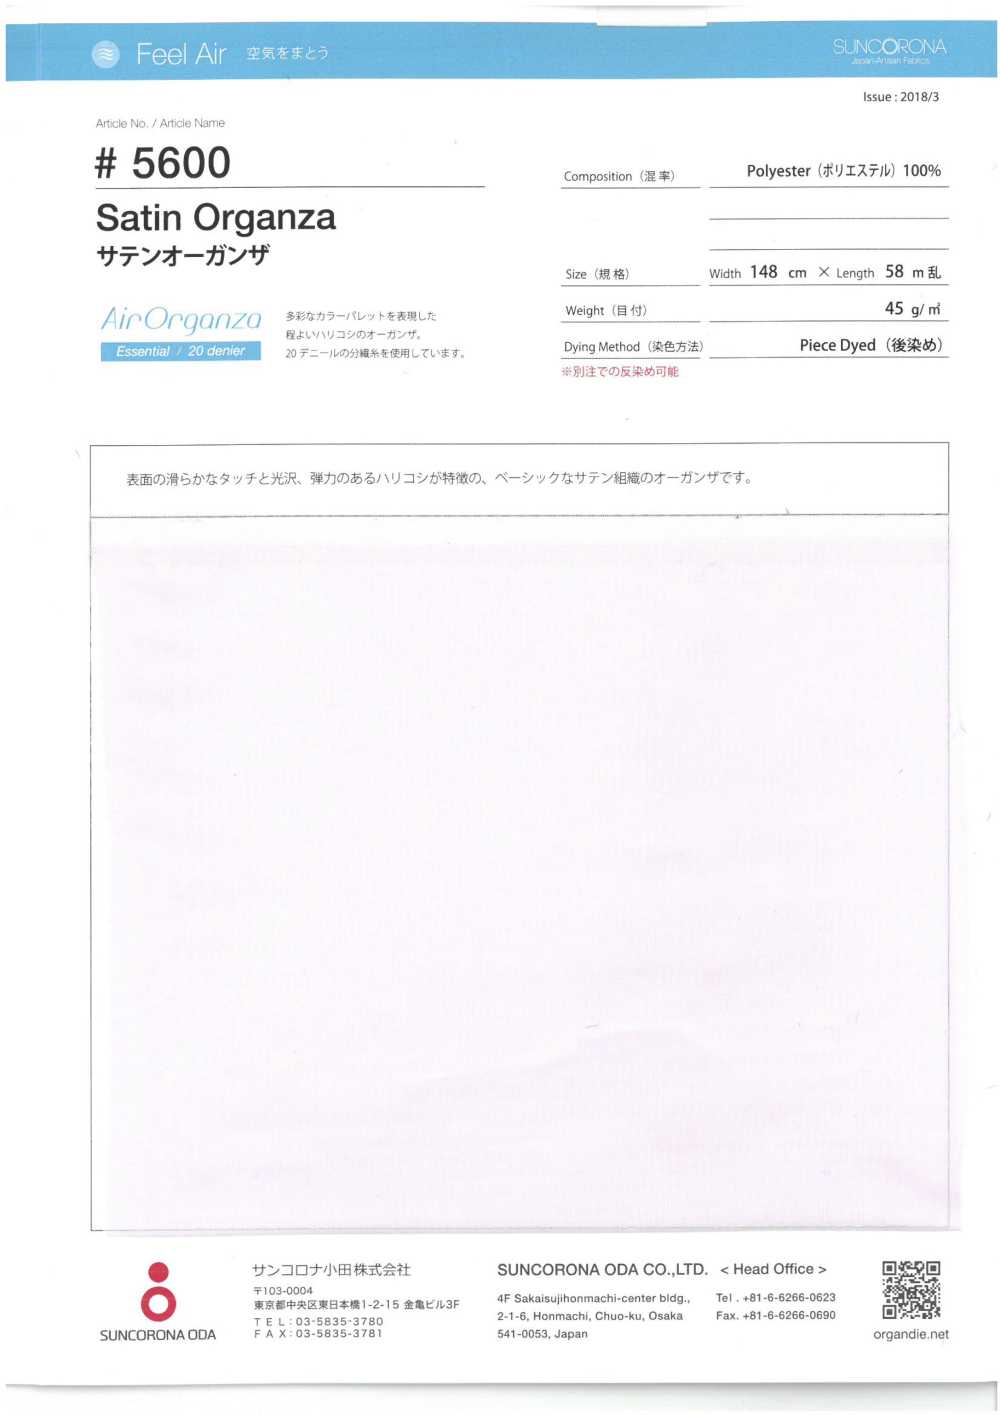 5600 Satin-Organza[Textilgewebe] Suncorona Oda